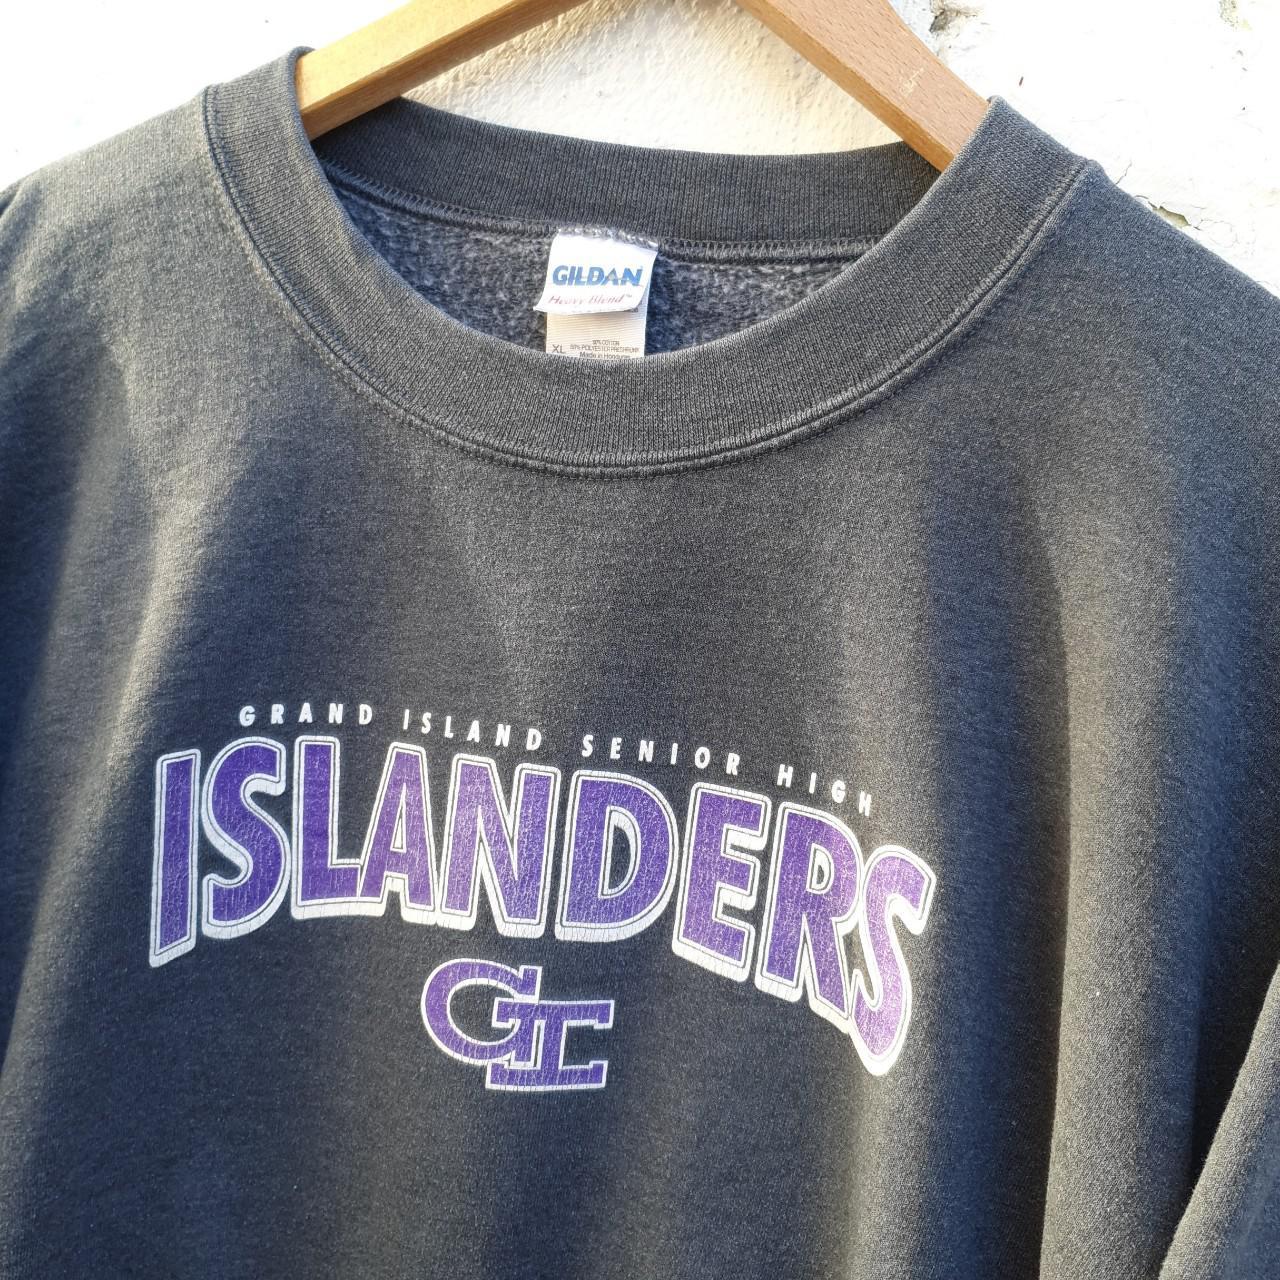 Vintage Islanders College Sweatshirt in Grey... - Depop